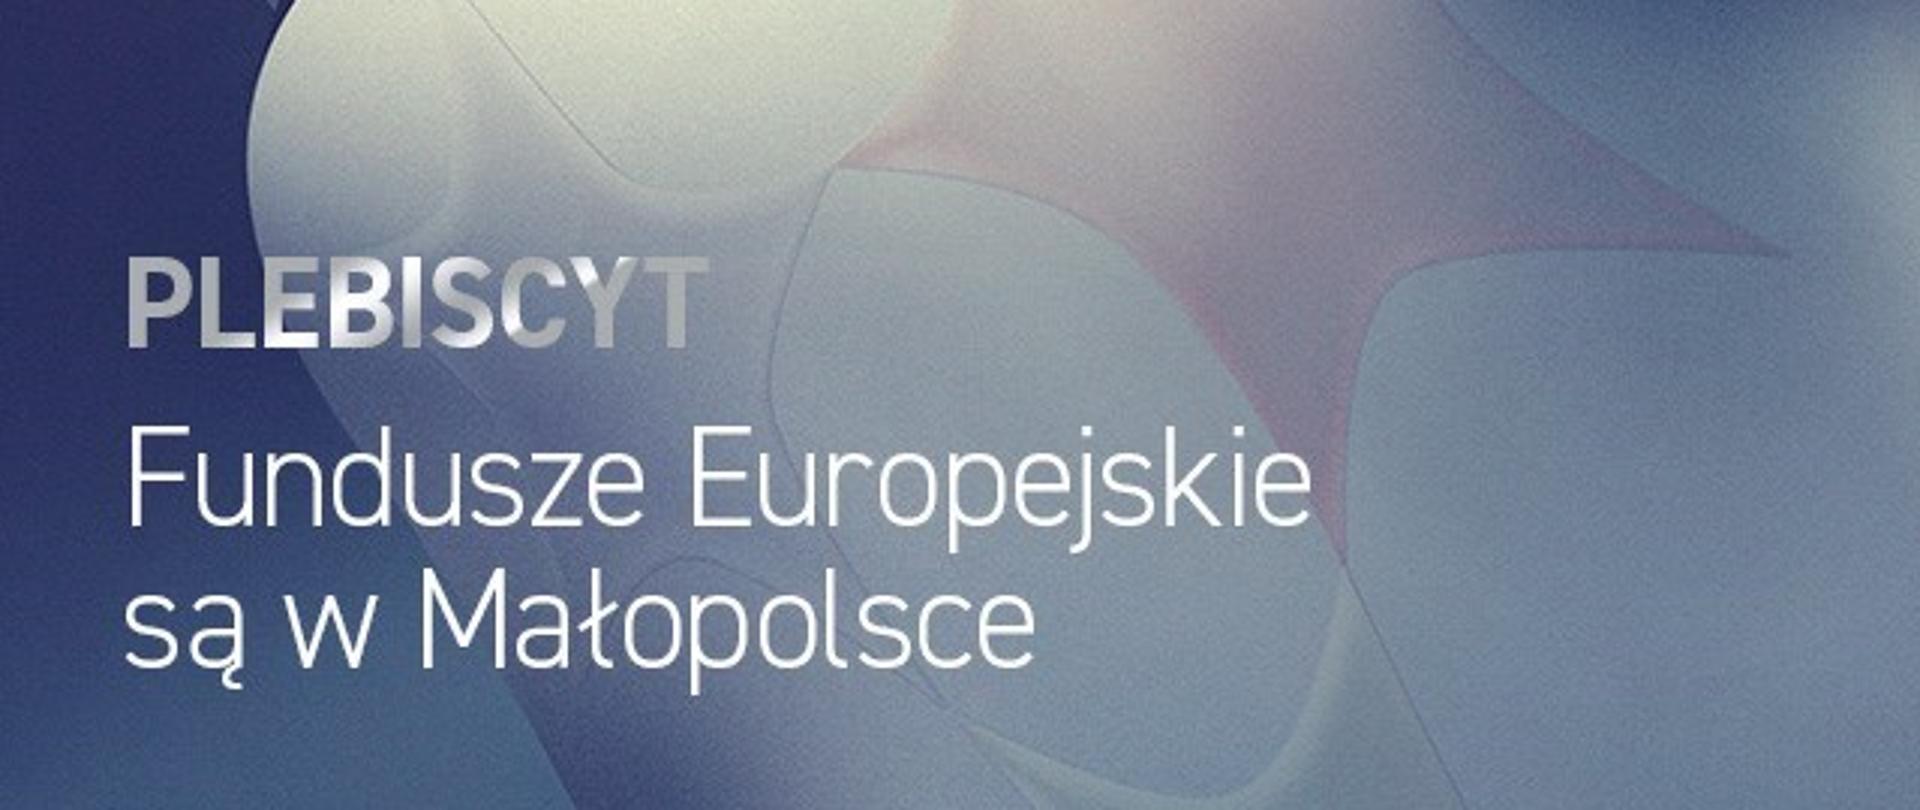 Stylizowana grafika w odcieniach granatu z napisem "Plebiscyt Fundusze Europejskie są w Małopolsce" i logo "Fundusze z Kulturą"